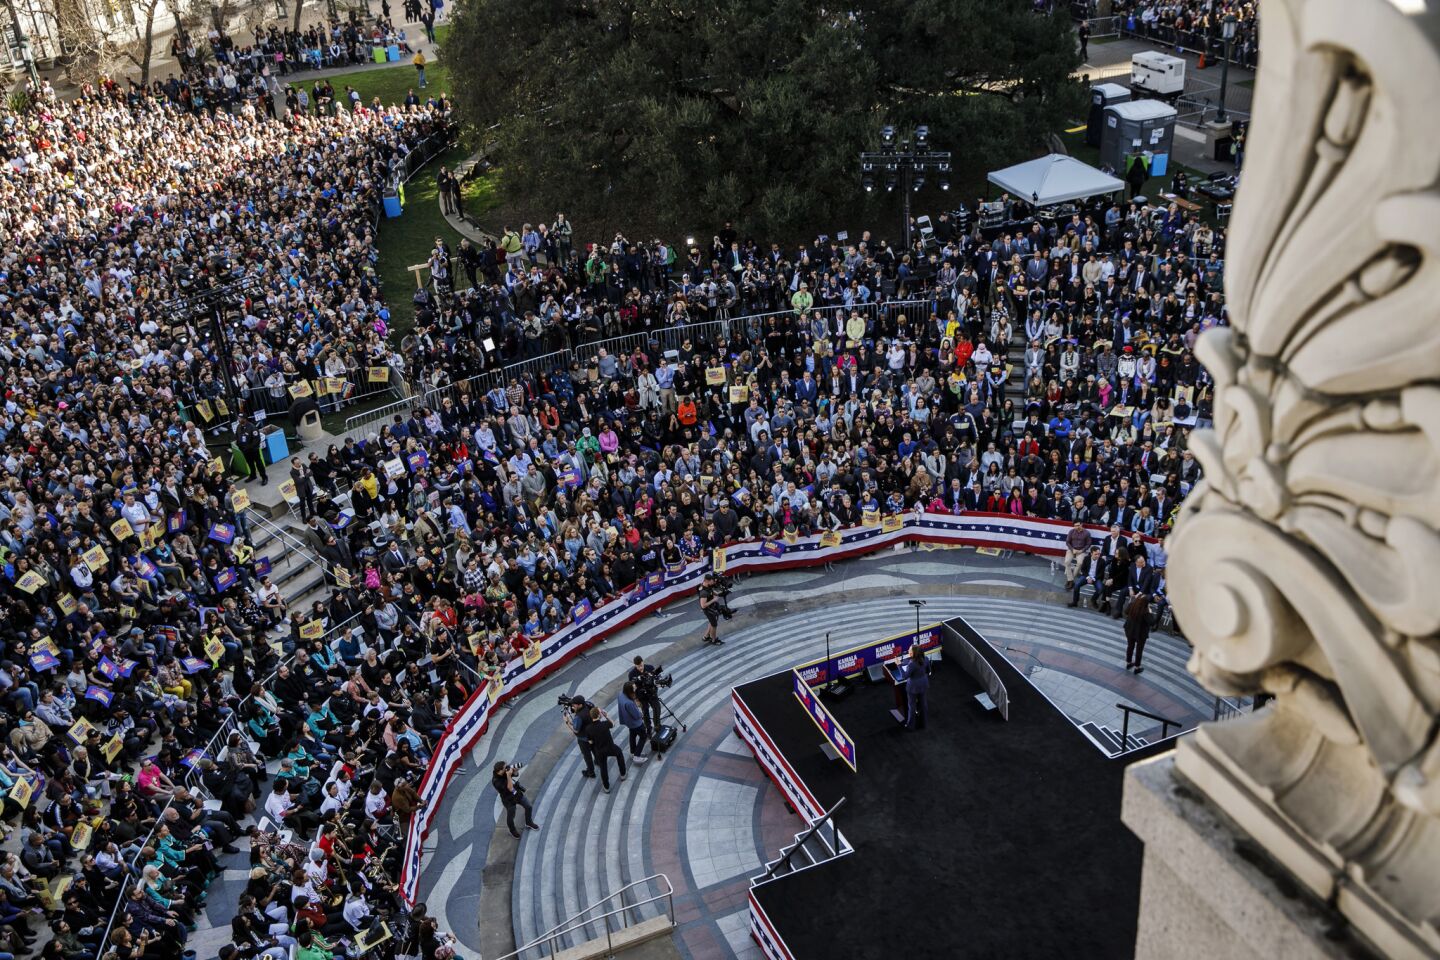 A huge crowd attends a speech by Sen. Kamala Harris in Oakland.